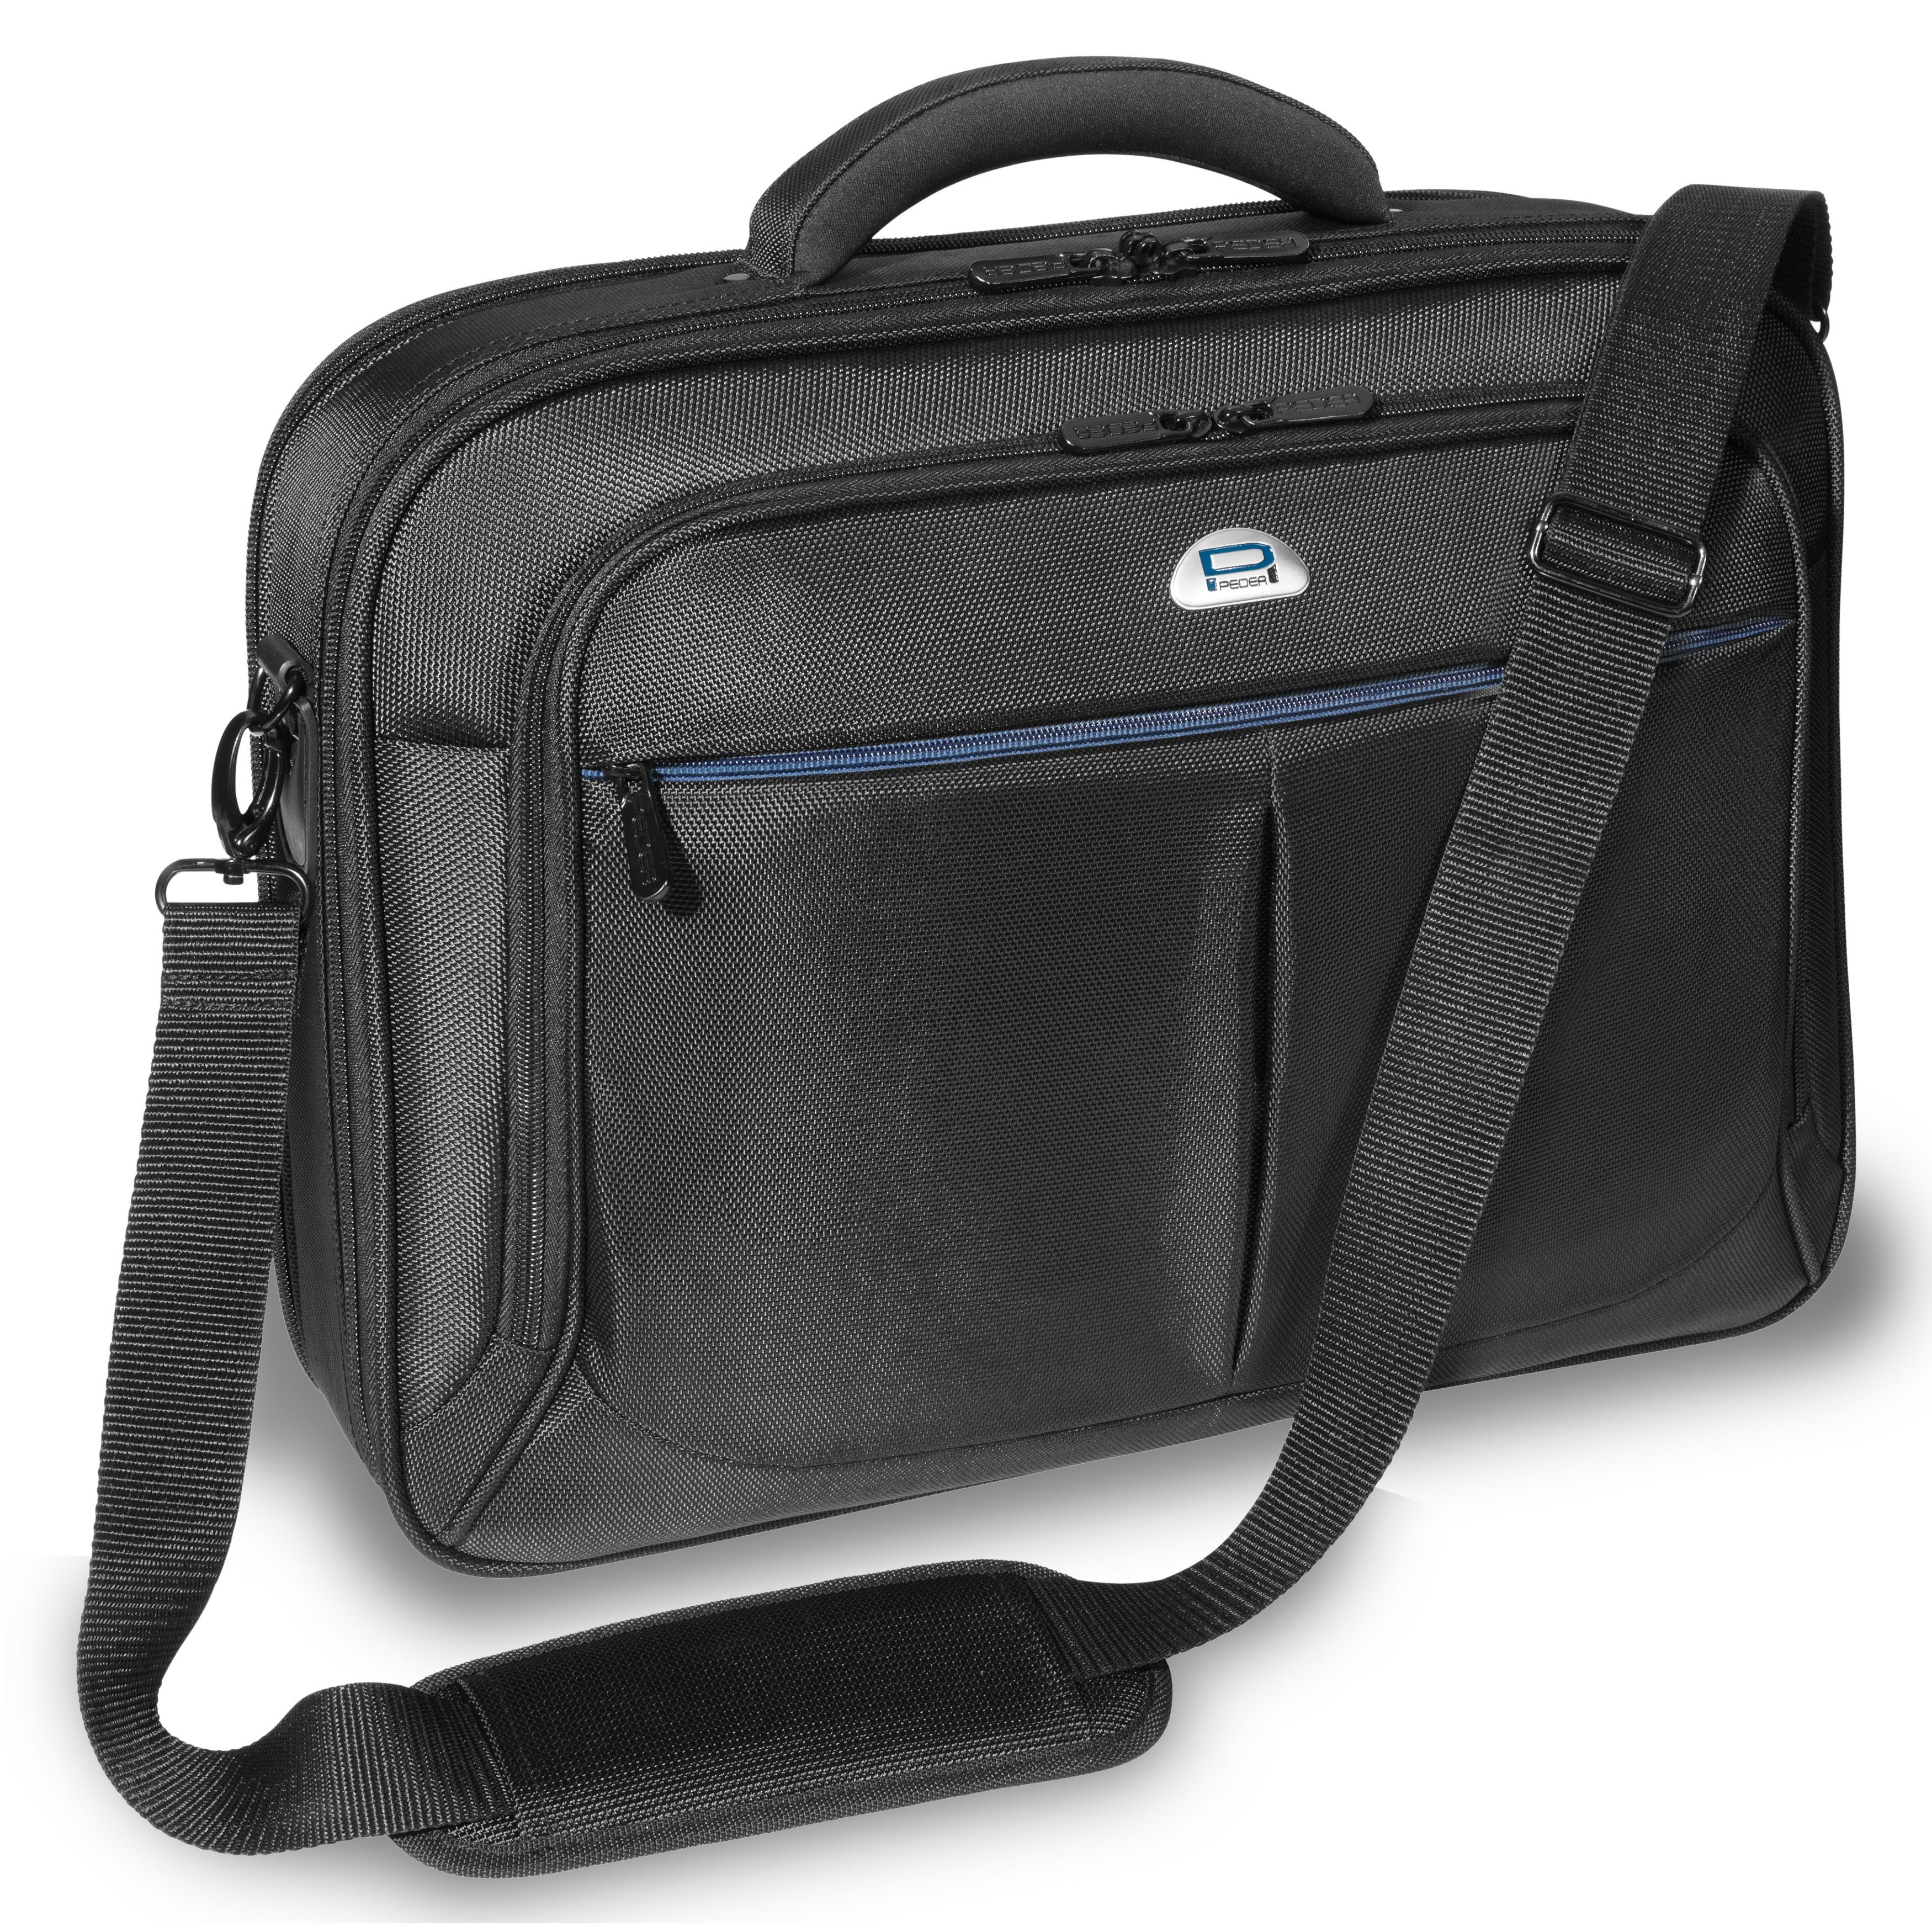 PEDEA Laptoptasche Premium (15,6 Zoll (39,6 cm), stabiler Schutzrahmen, dicke Polsterung, wasserabweisende Materialien schwarz